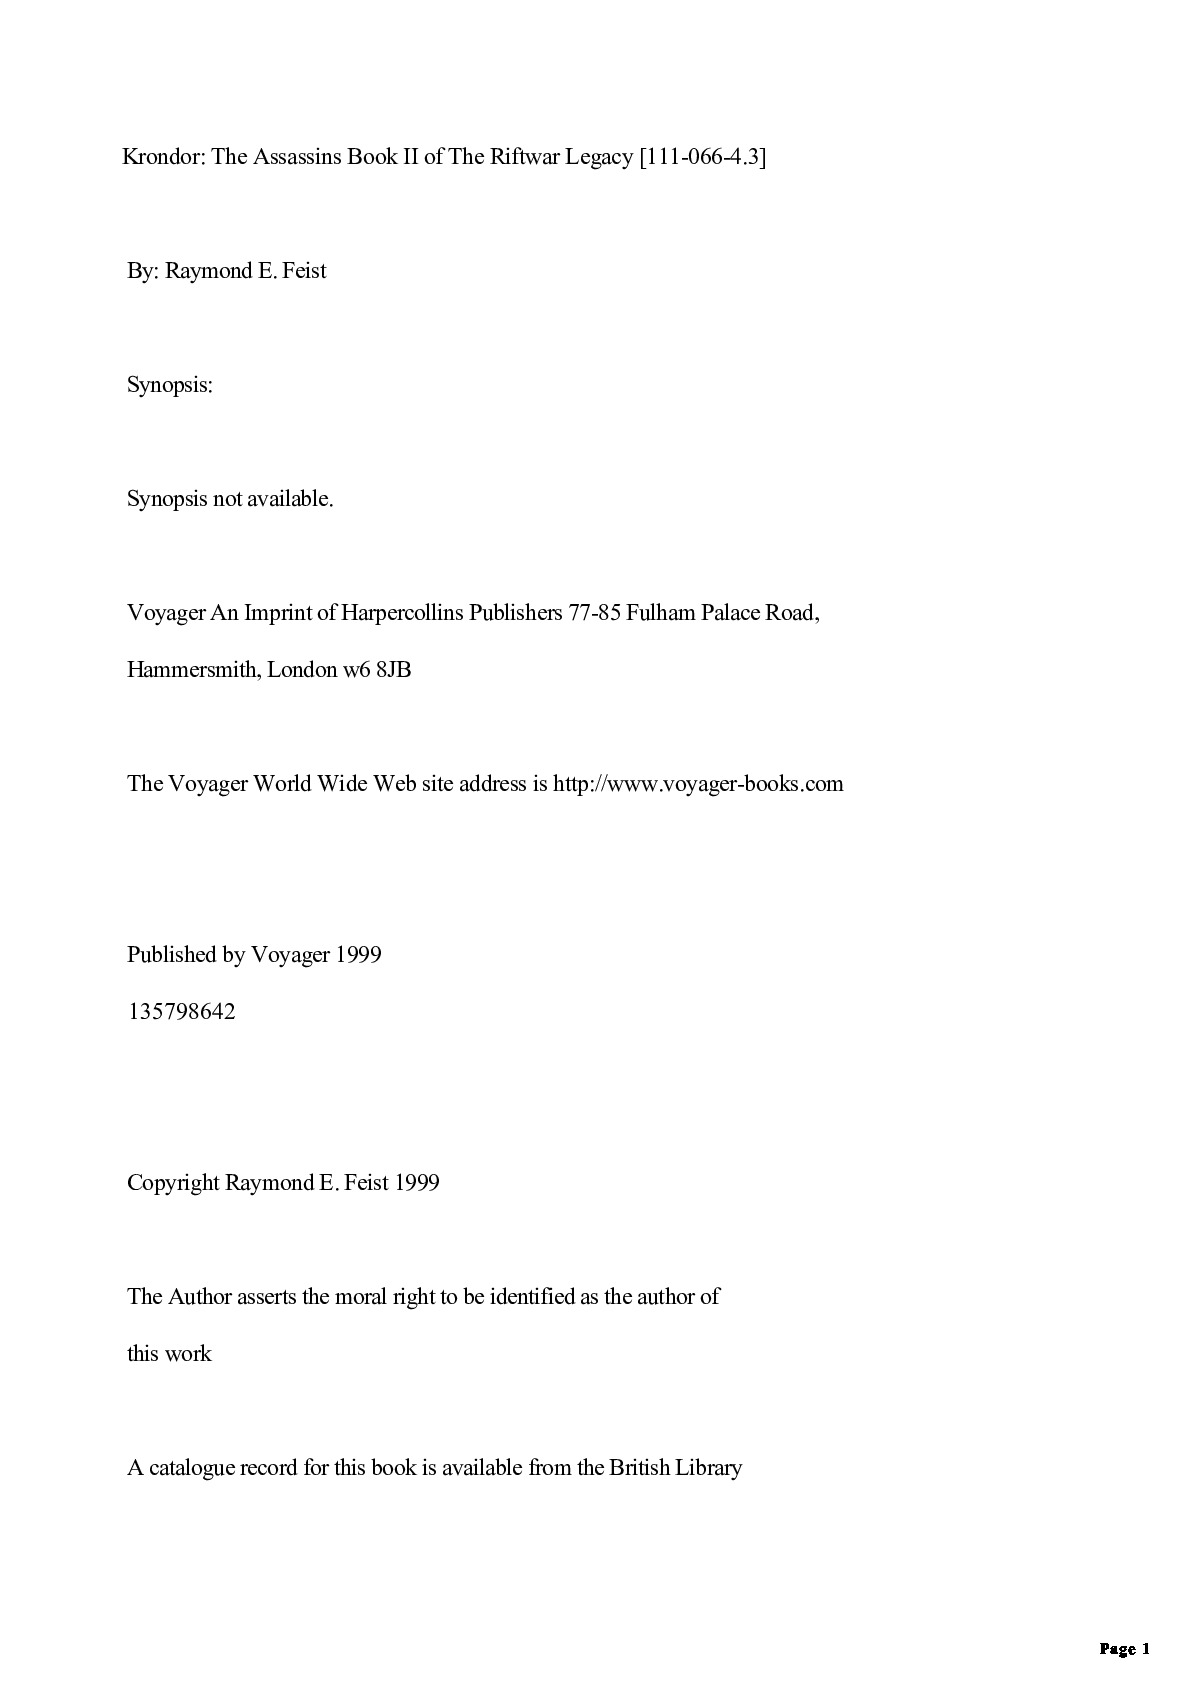 Raymond E. Feist – Riftwar Legacy 00 – Return to Krondor